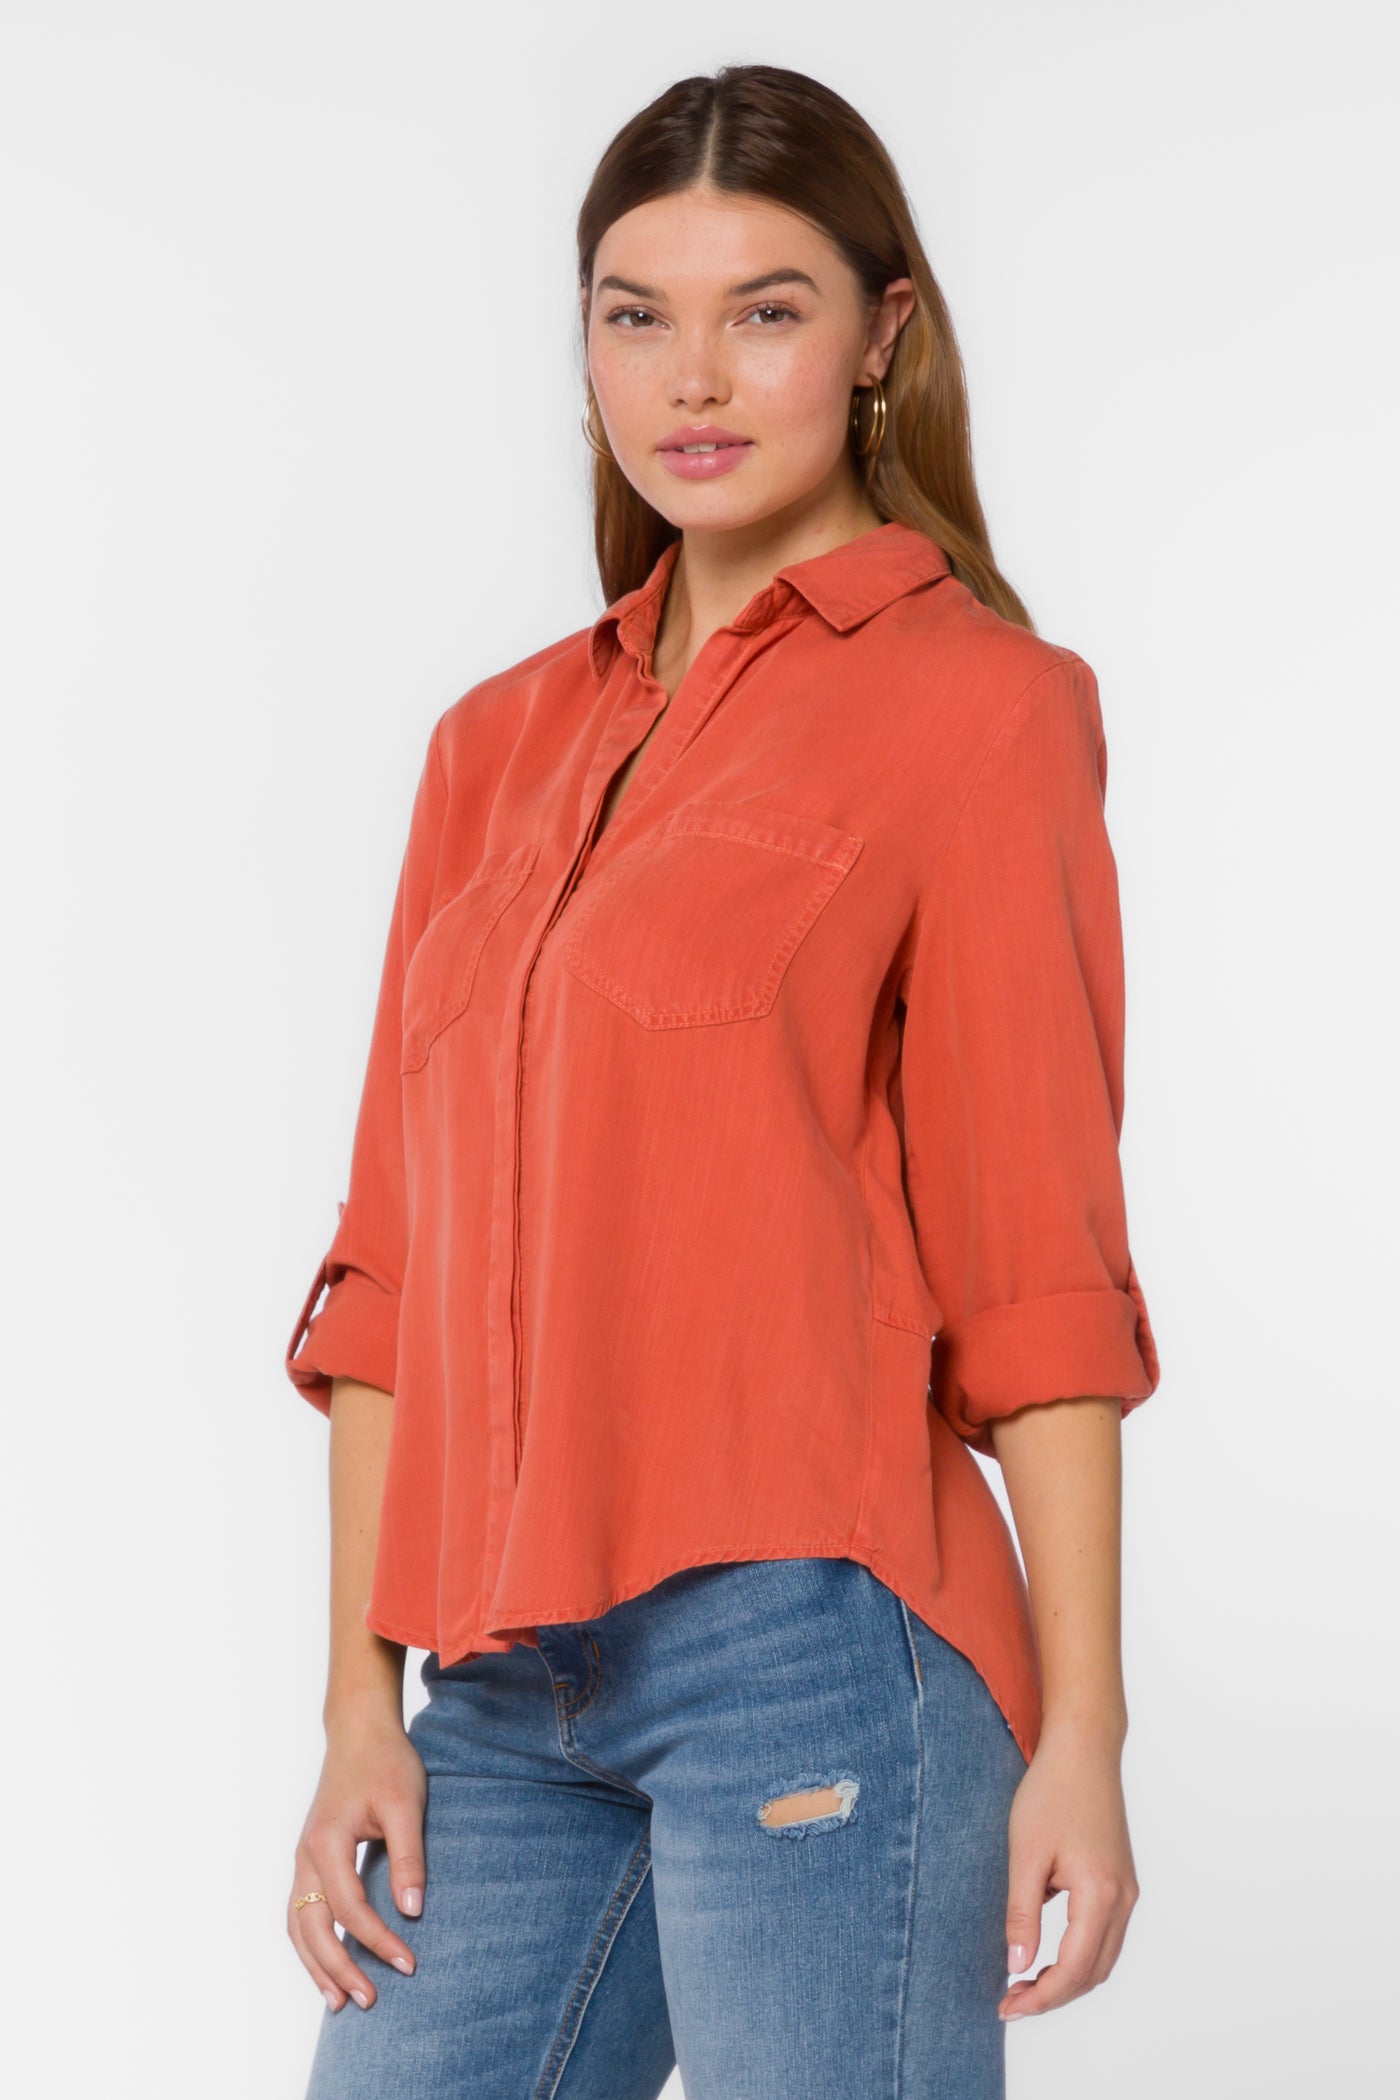 Riley Ginger Spice Shirt - Tops - Velvet Heart Clothing